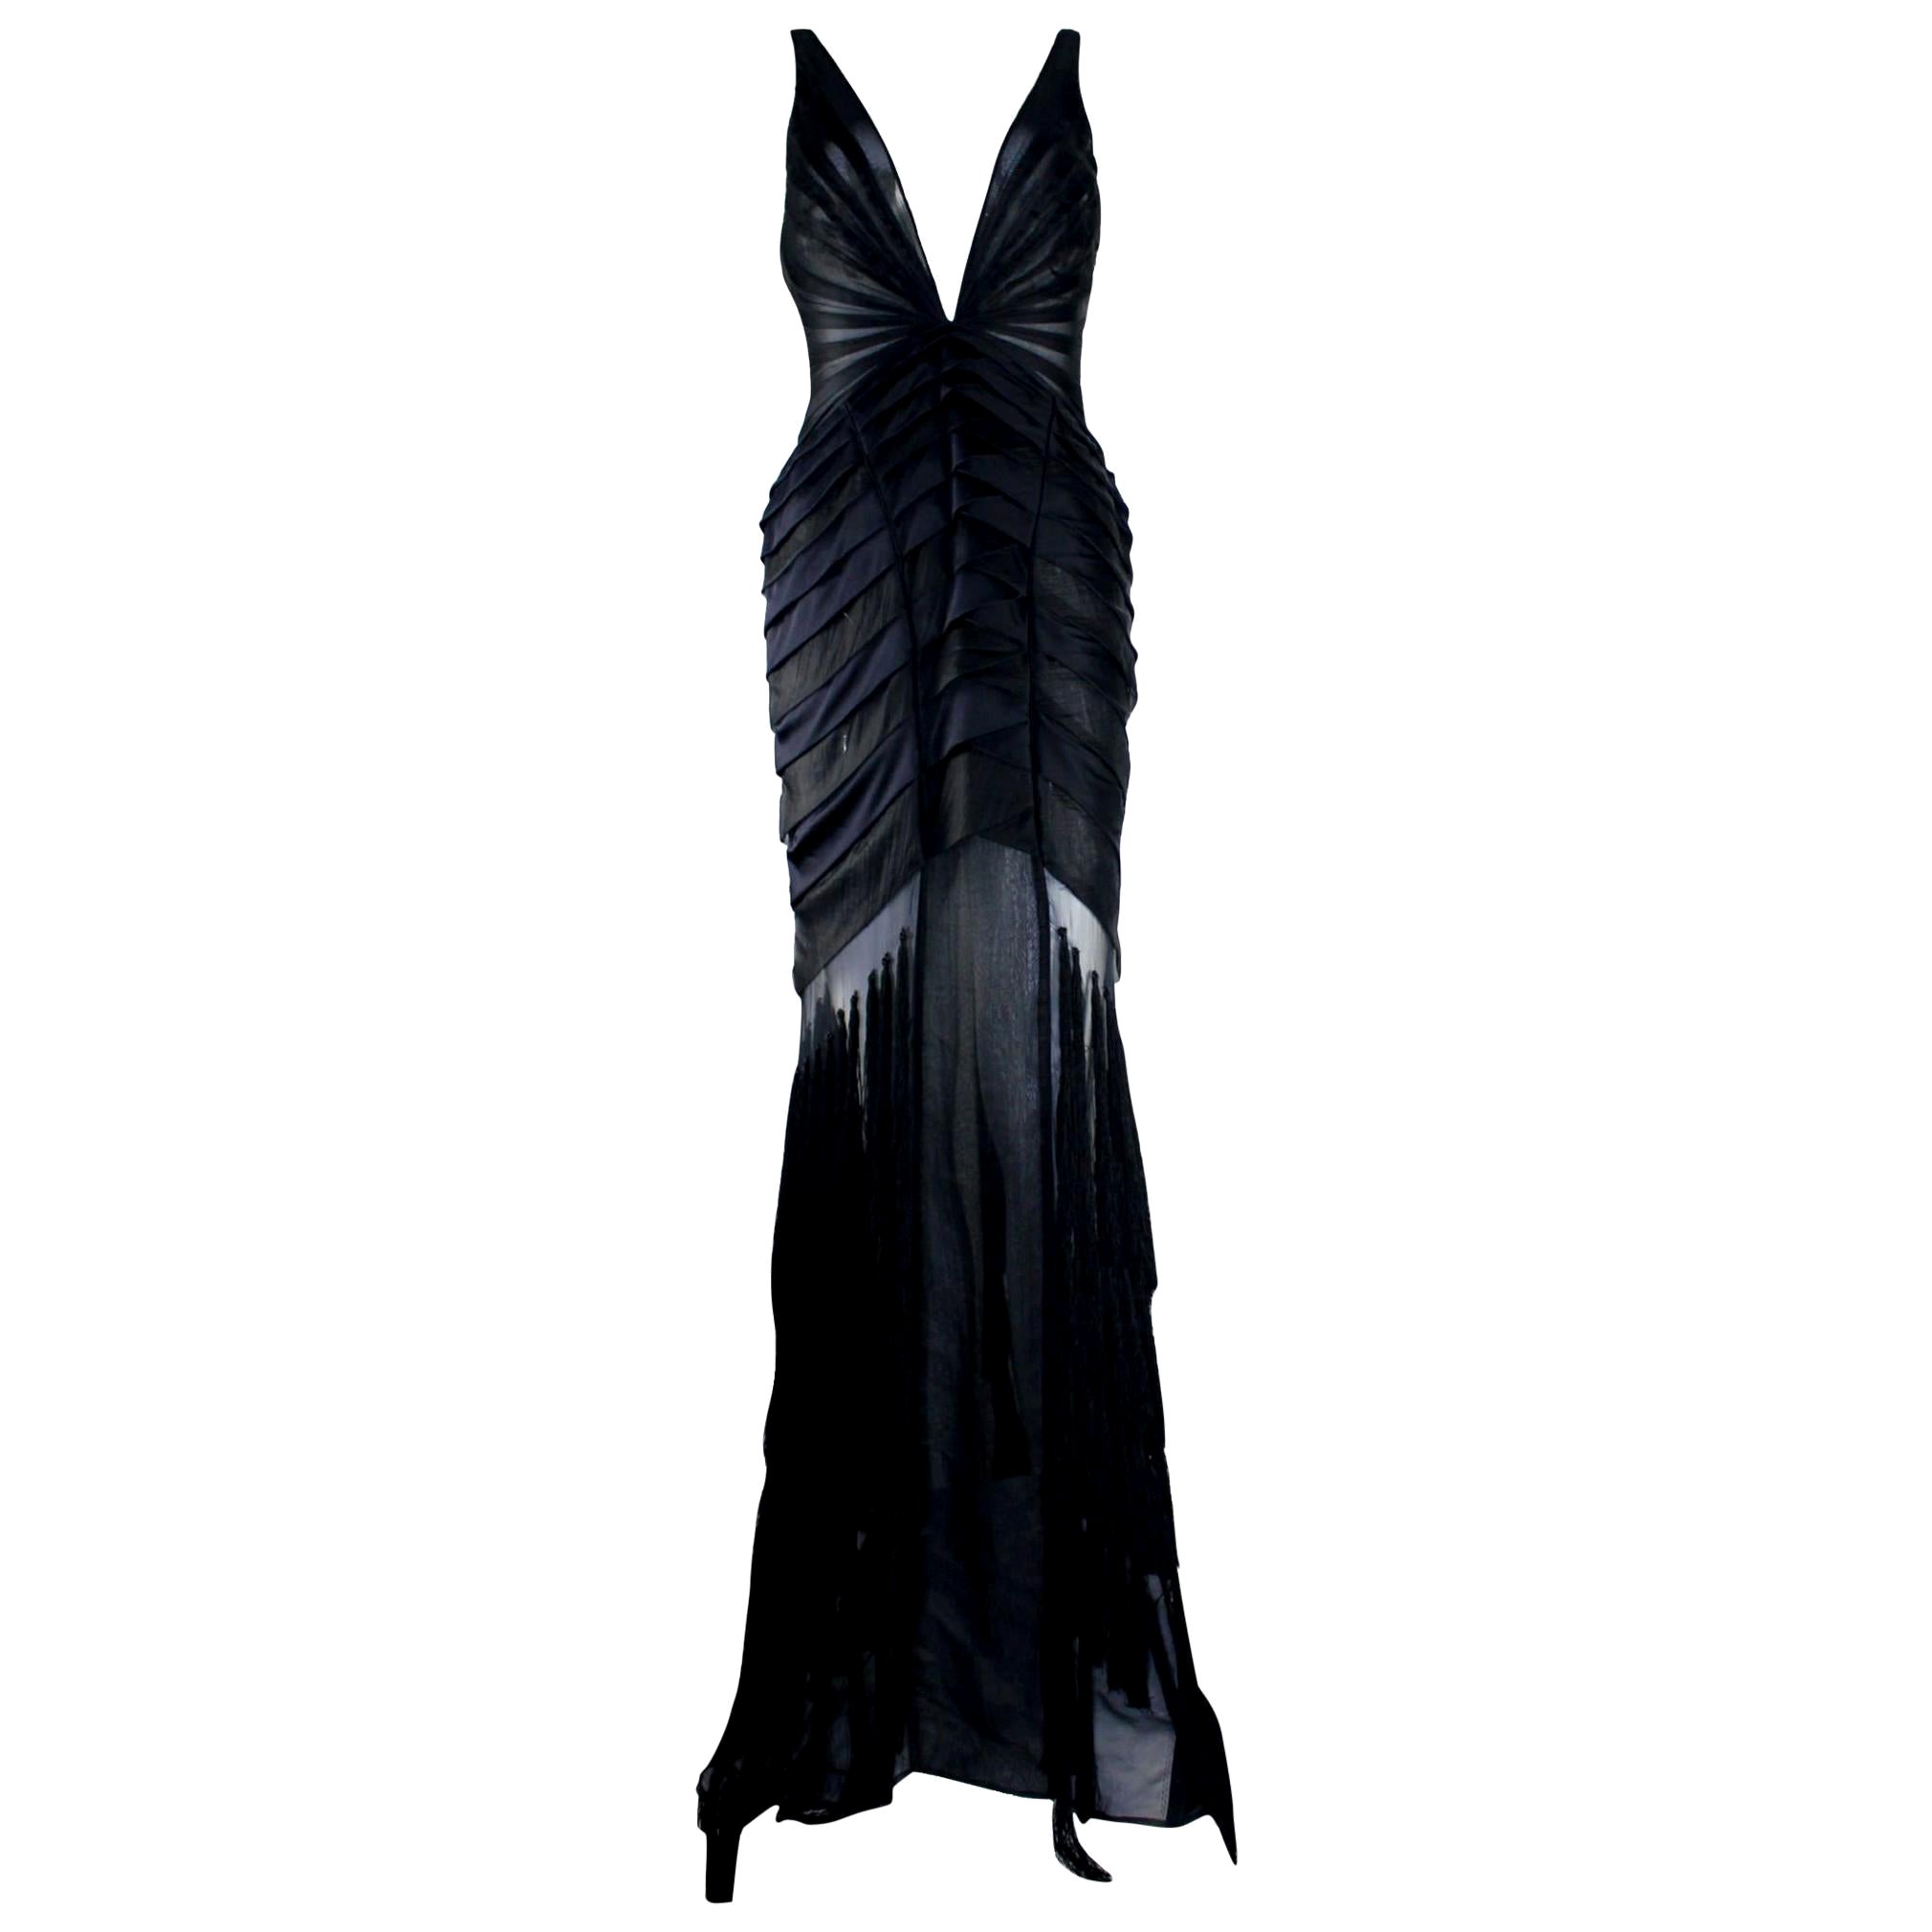 UNWORN Gucci by Tom Ford FW 2004 Black Silk & Tassle Evening Gown Dress 40